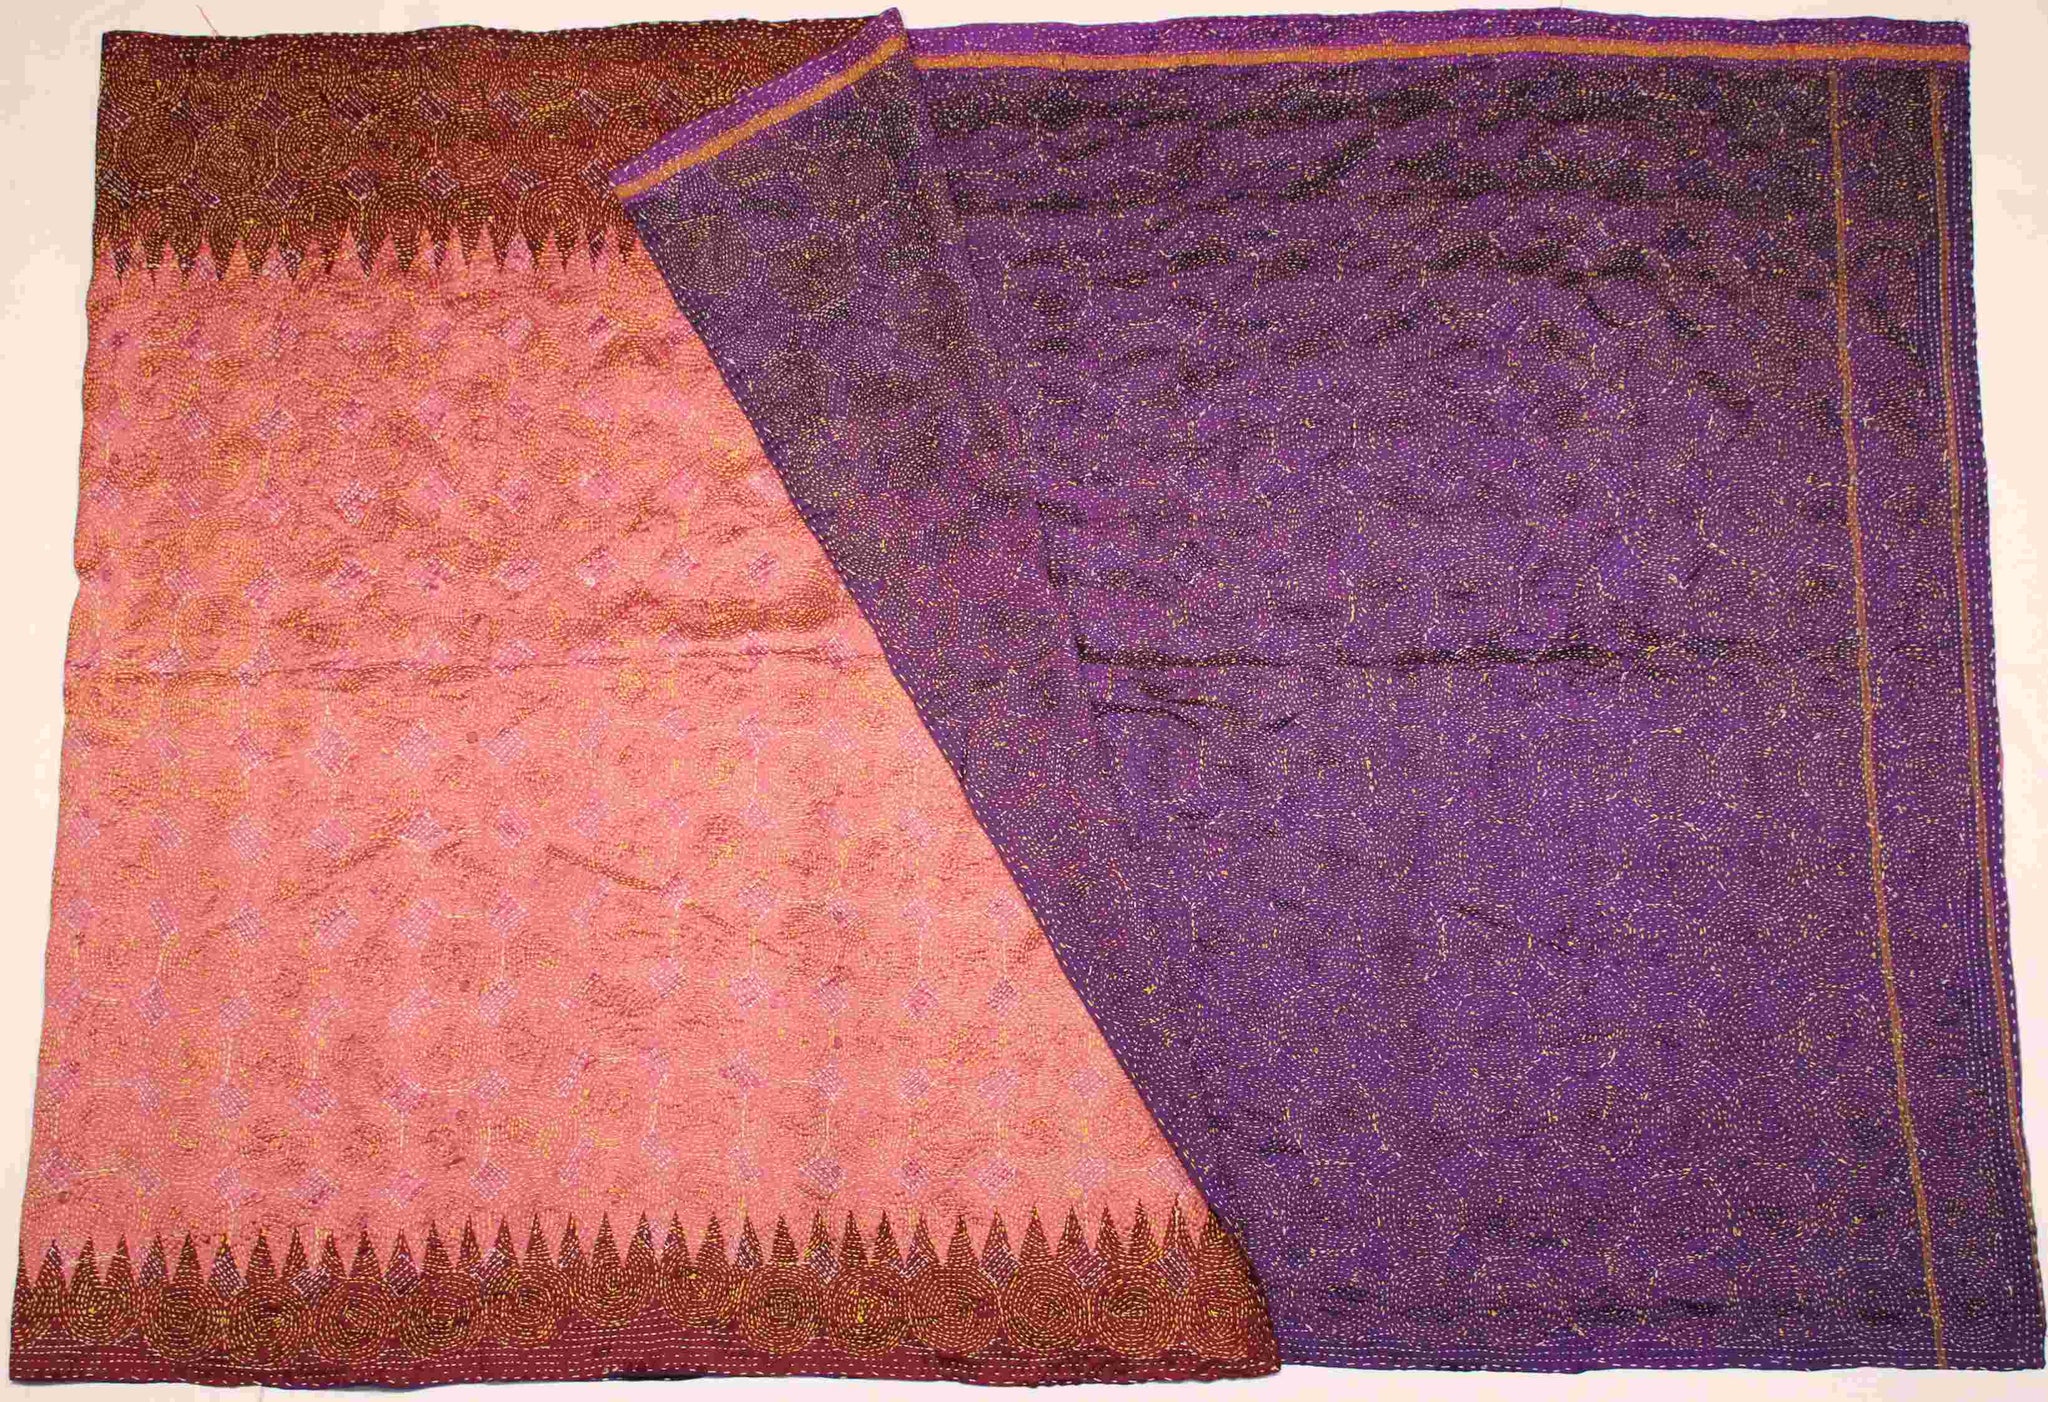 Hand-stitched Silk Throw